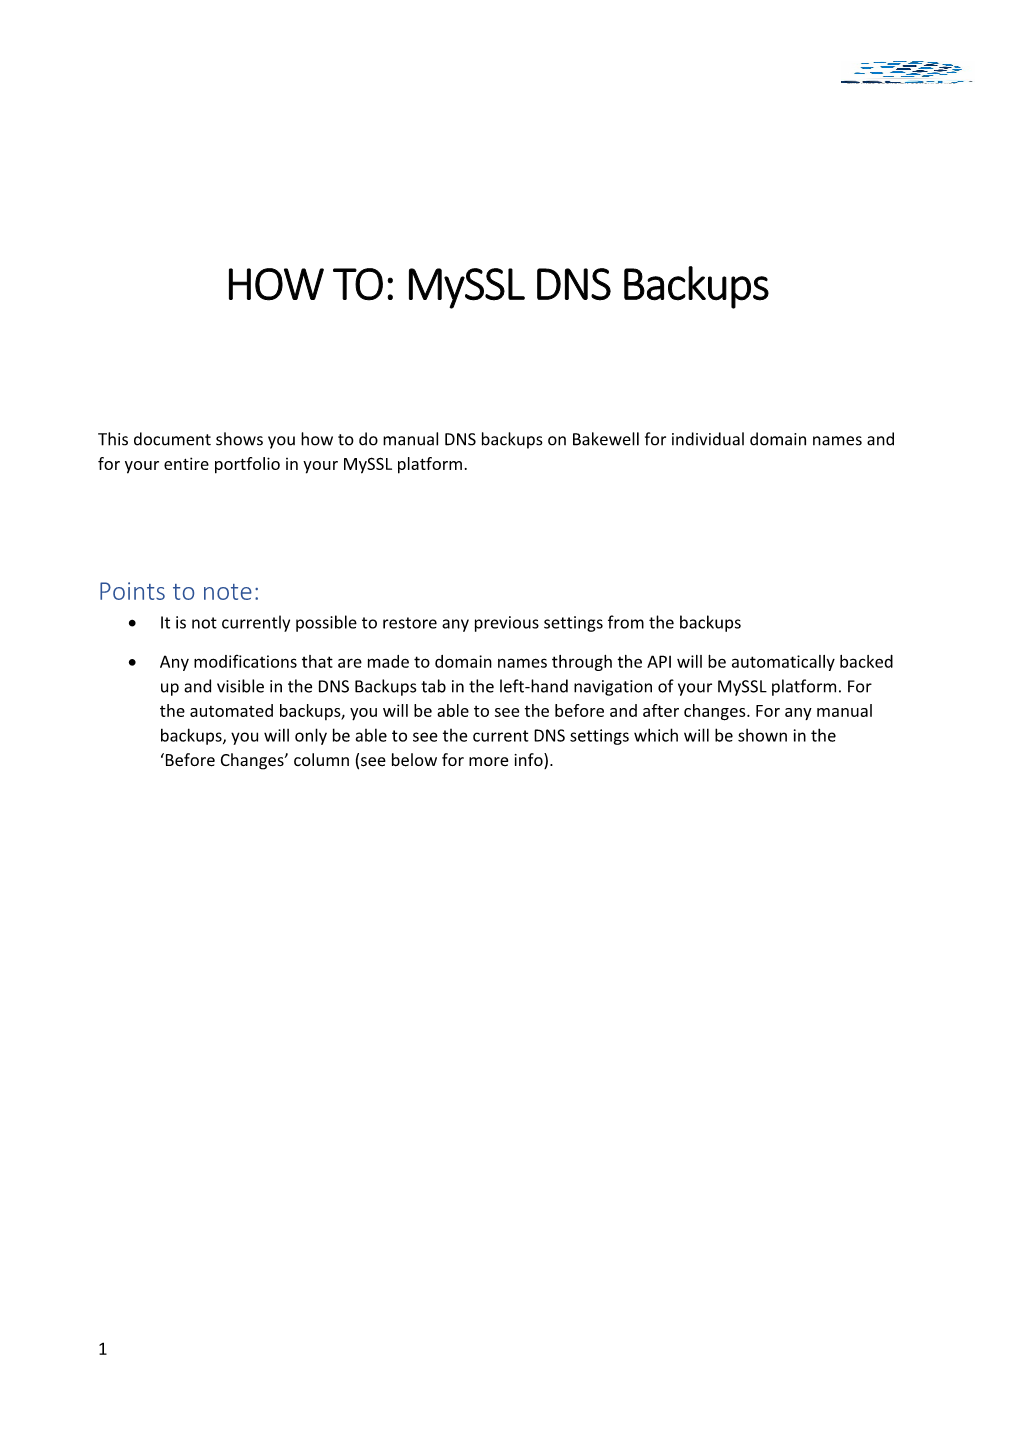 HOW TO: Myssldns Backups